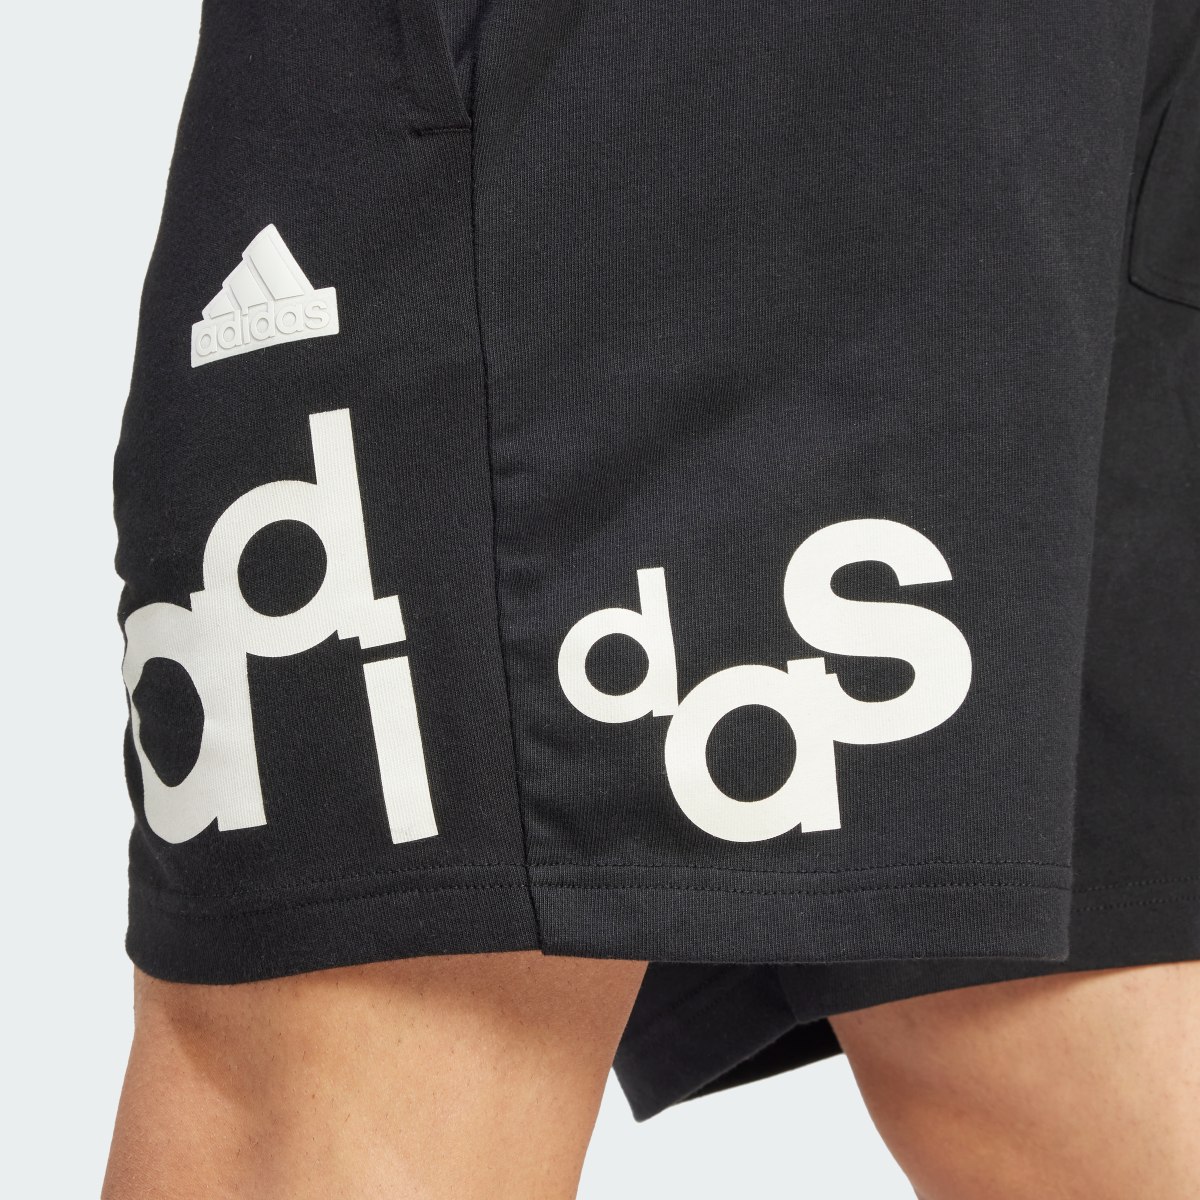 Adidas Graphic Print Shorts. 5